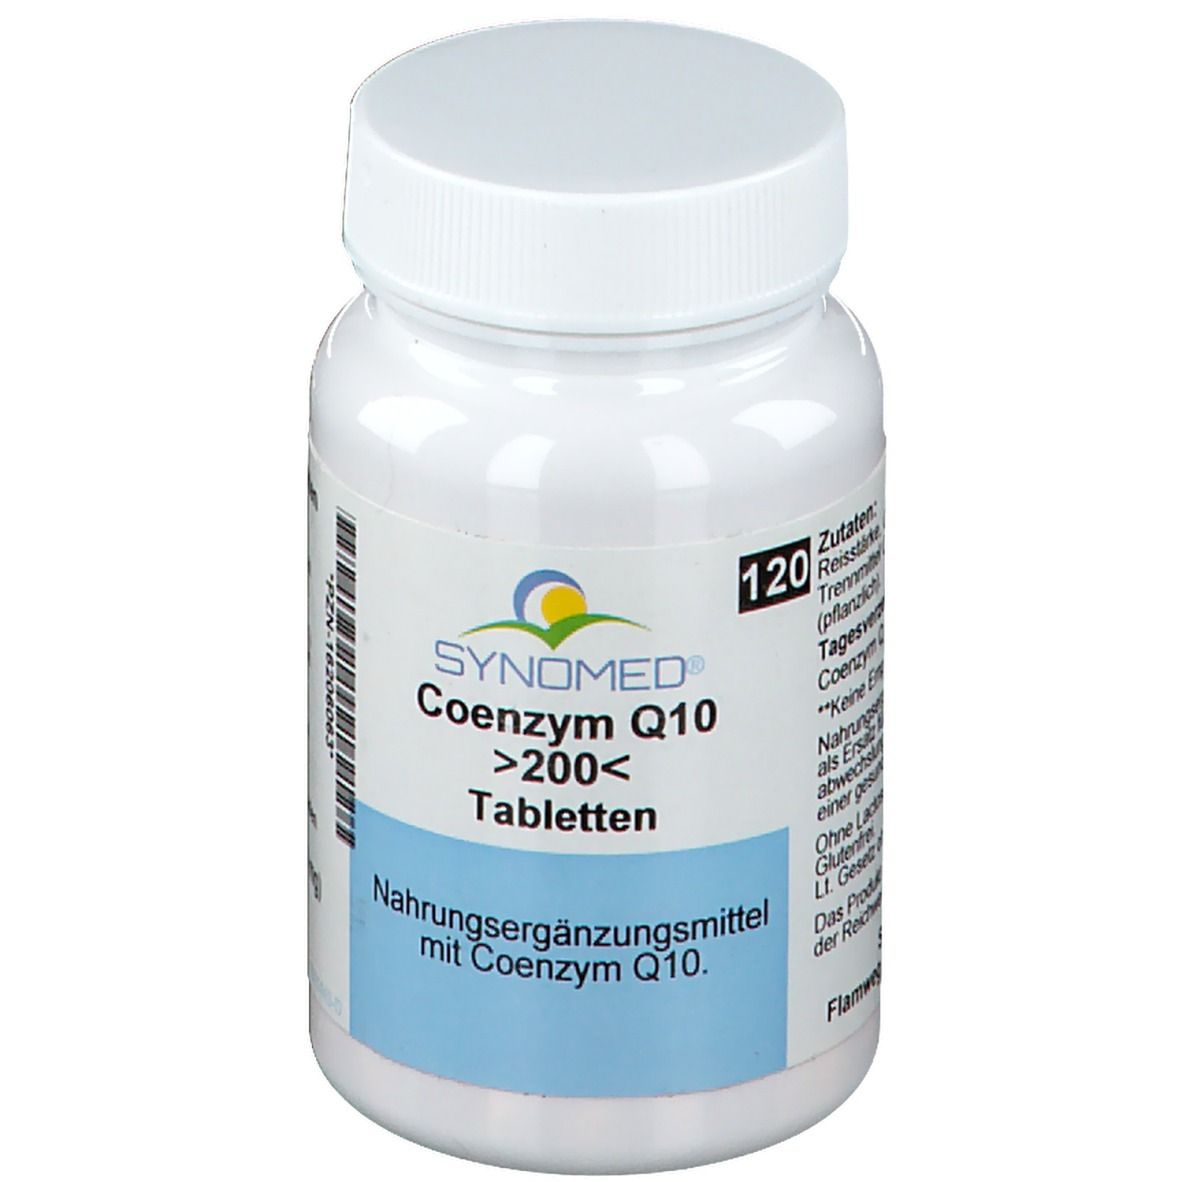 SYNOMED® Coenzym Q10